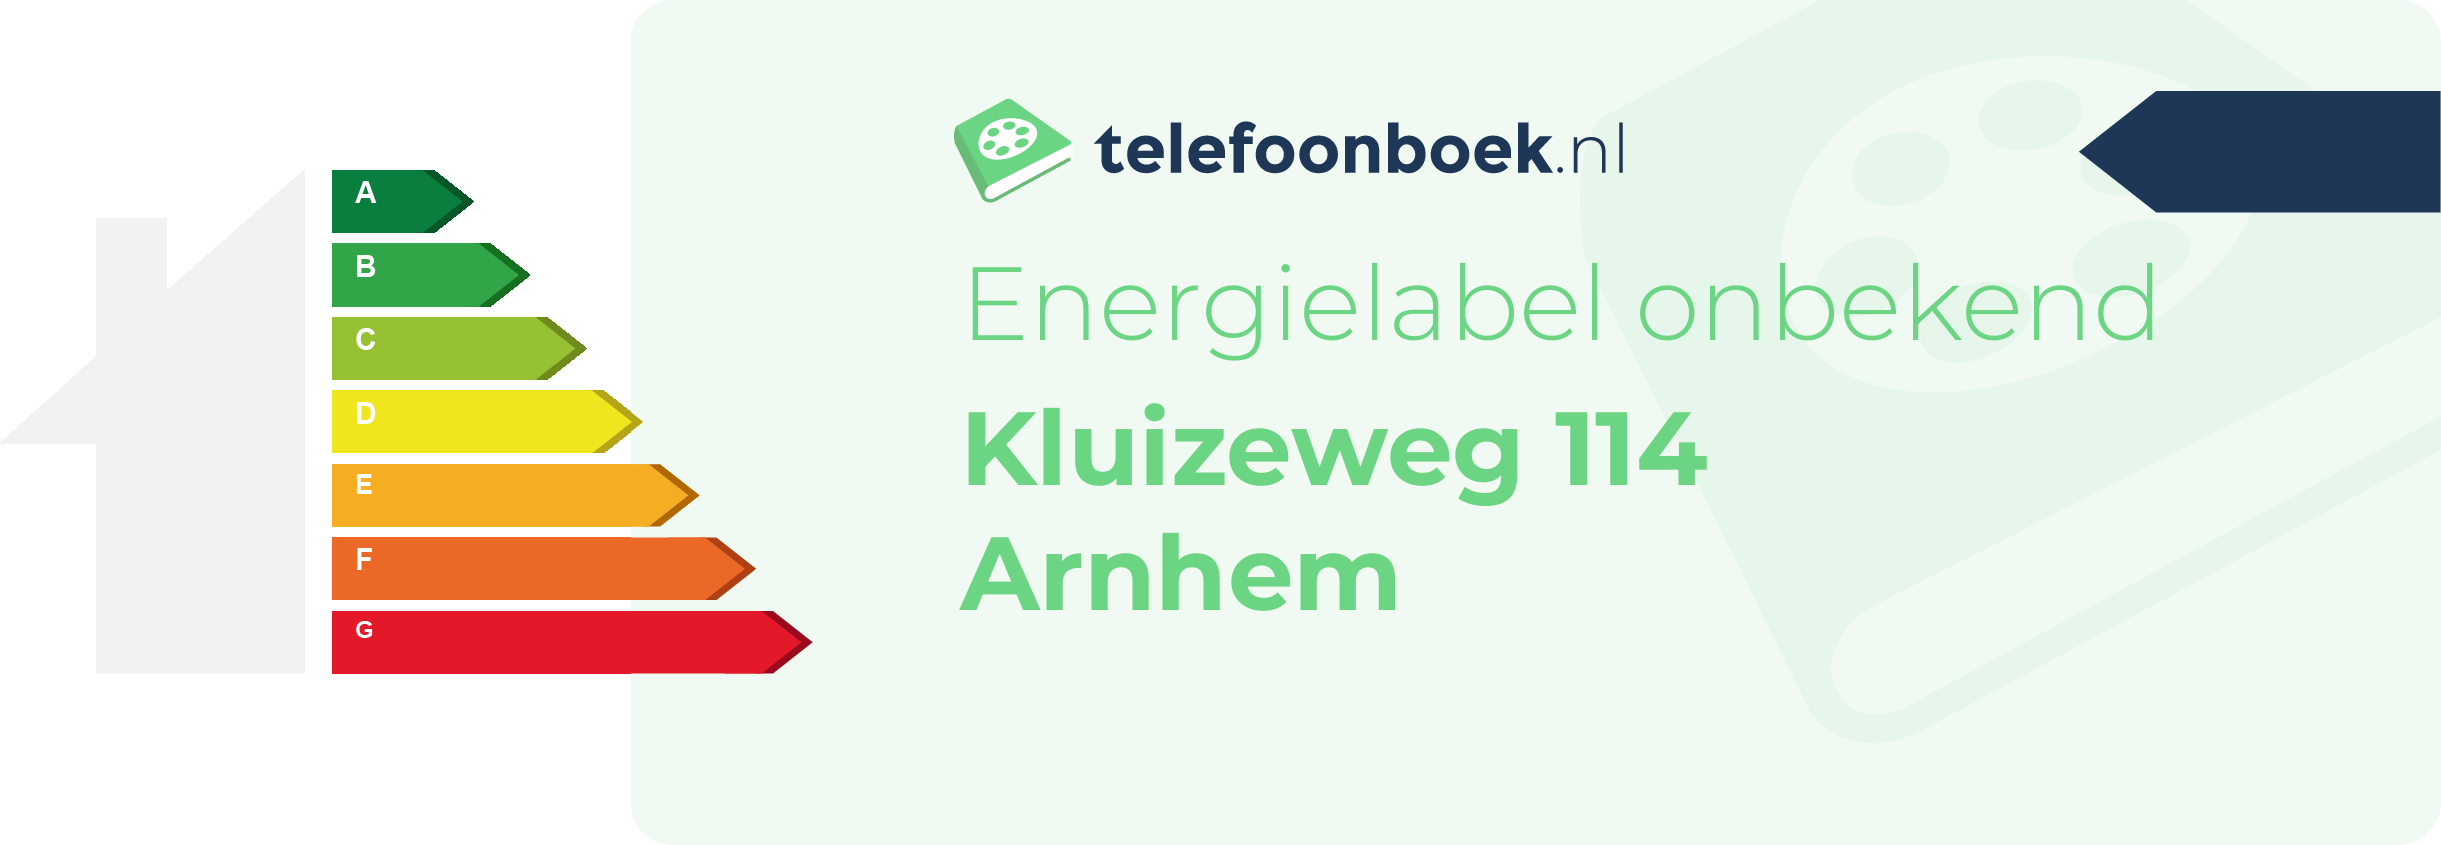 Energielabel Kluizeweg 114 Arnhem